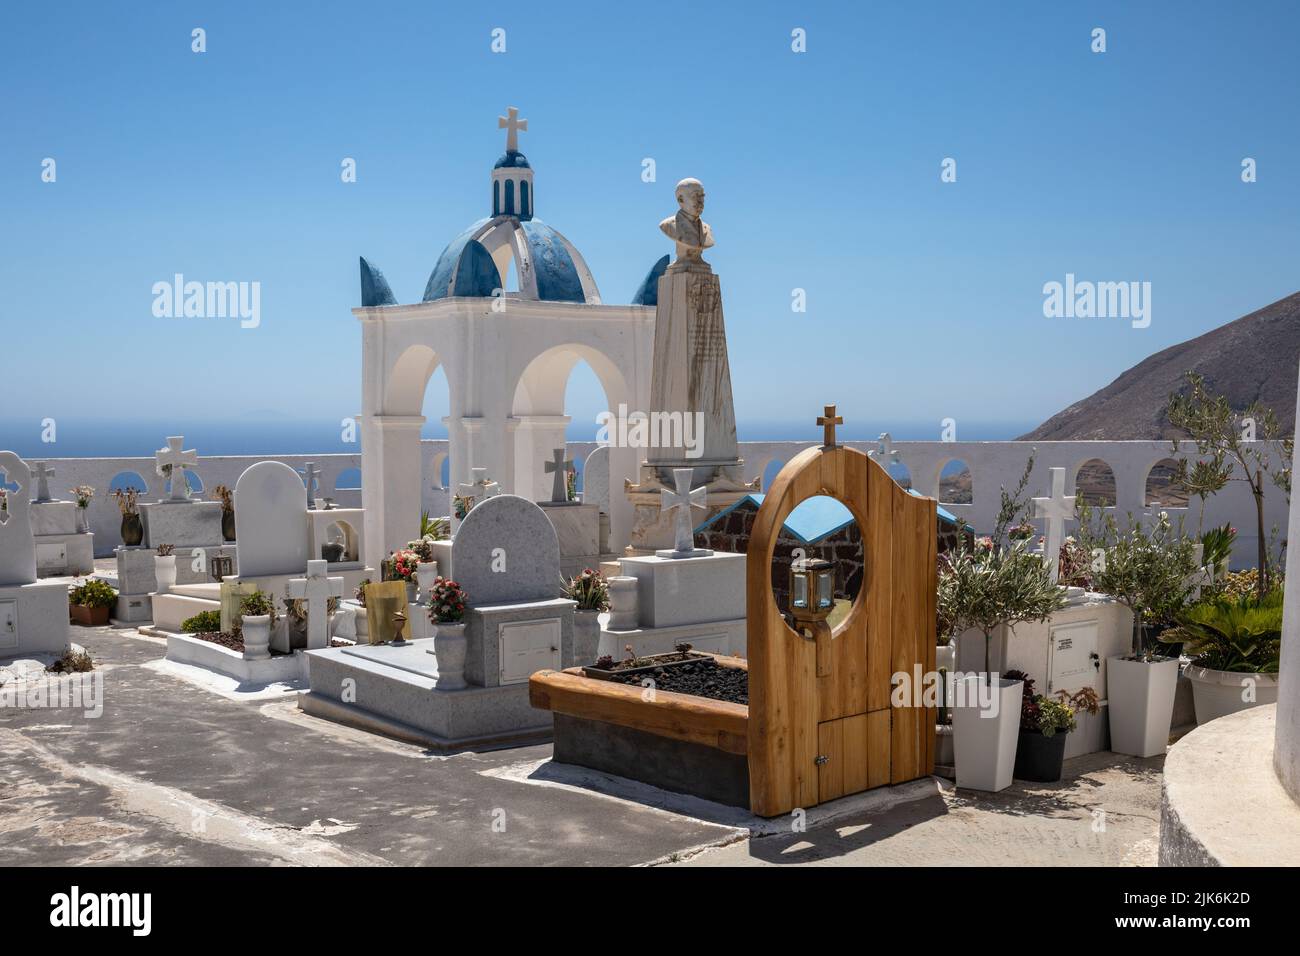 Hermosa iglesia encalada con cúpula azul, campanario y cementerio a pocos metros de la Iglesia de Agios Charalambos, Exo Gonia Santorini, Grecia. Foto de stock